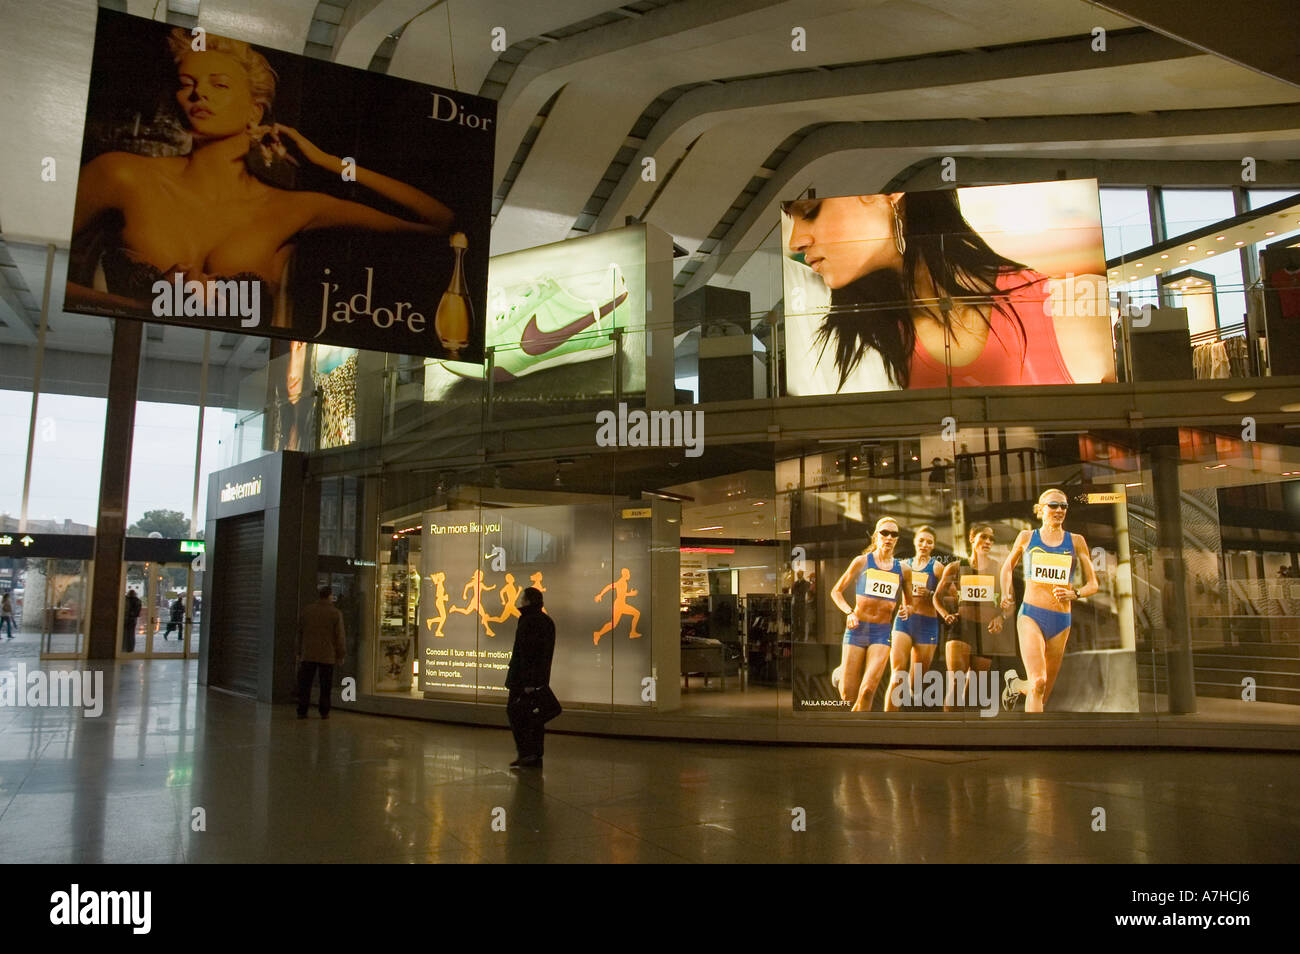 De grandes annonces pour Nike et Dior à Rome Gare Termini Photo Stock -  Alamy